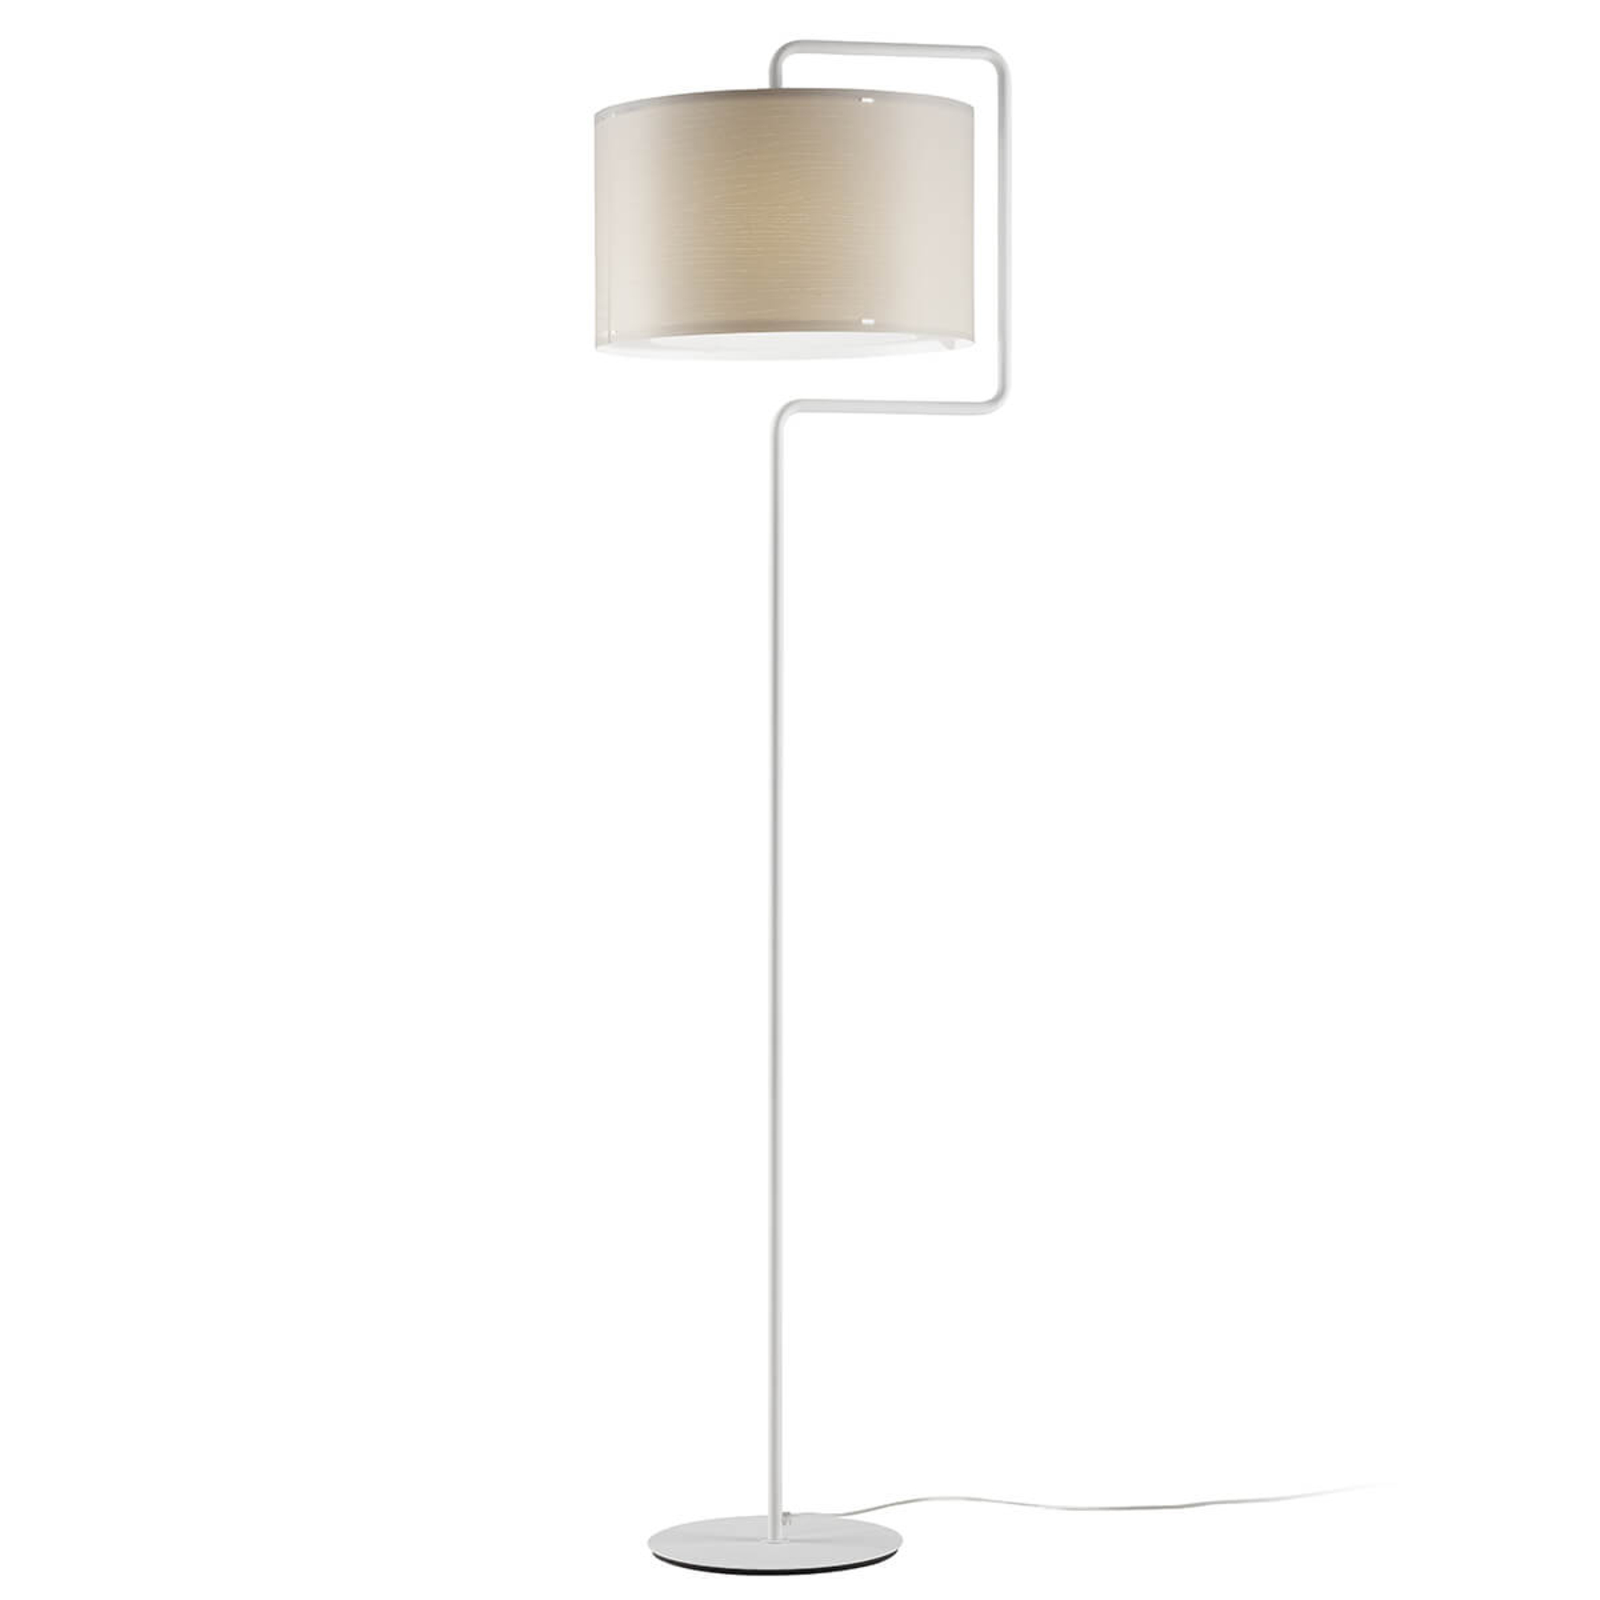 Kremowa lampa stojąca Morfeo z kremowego tworzywa sztucznego